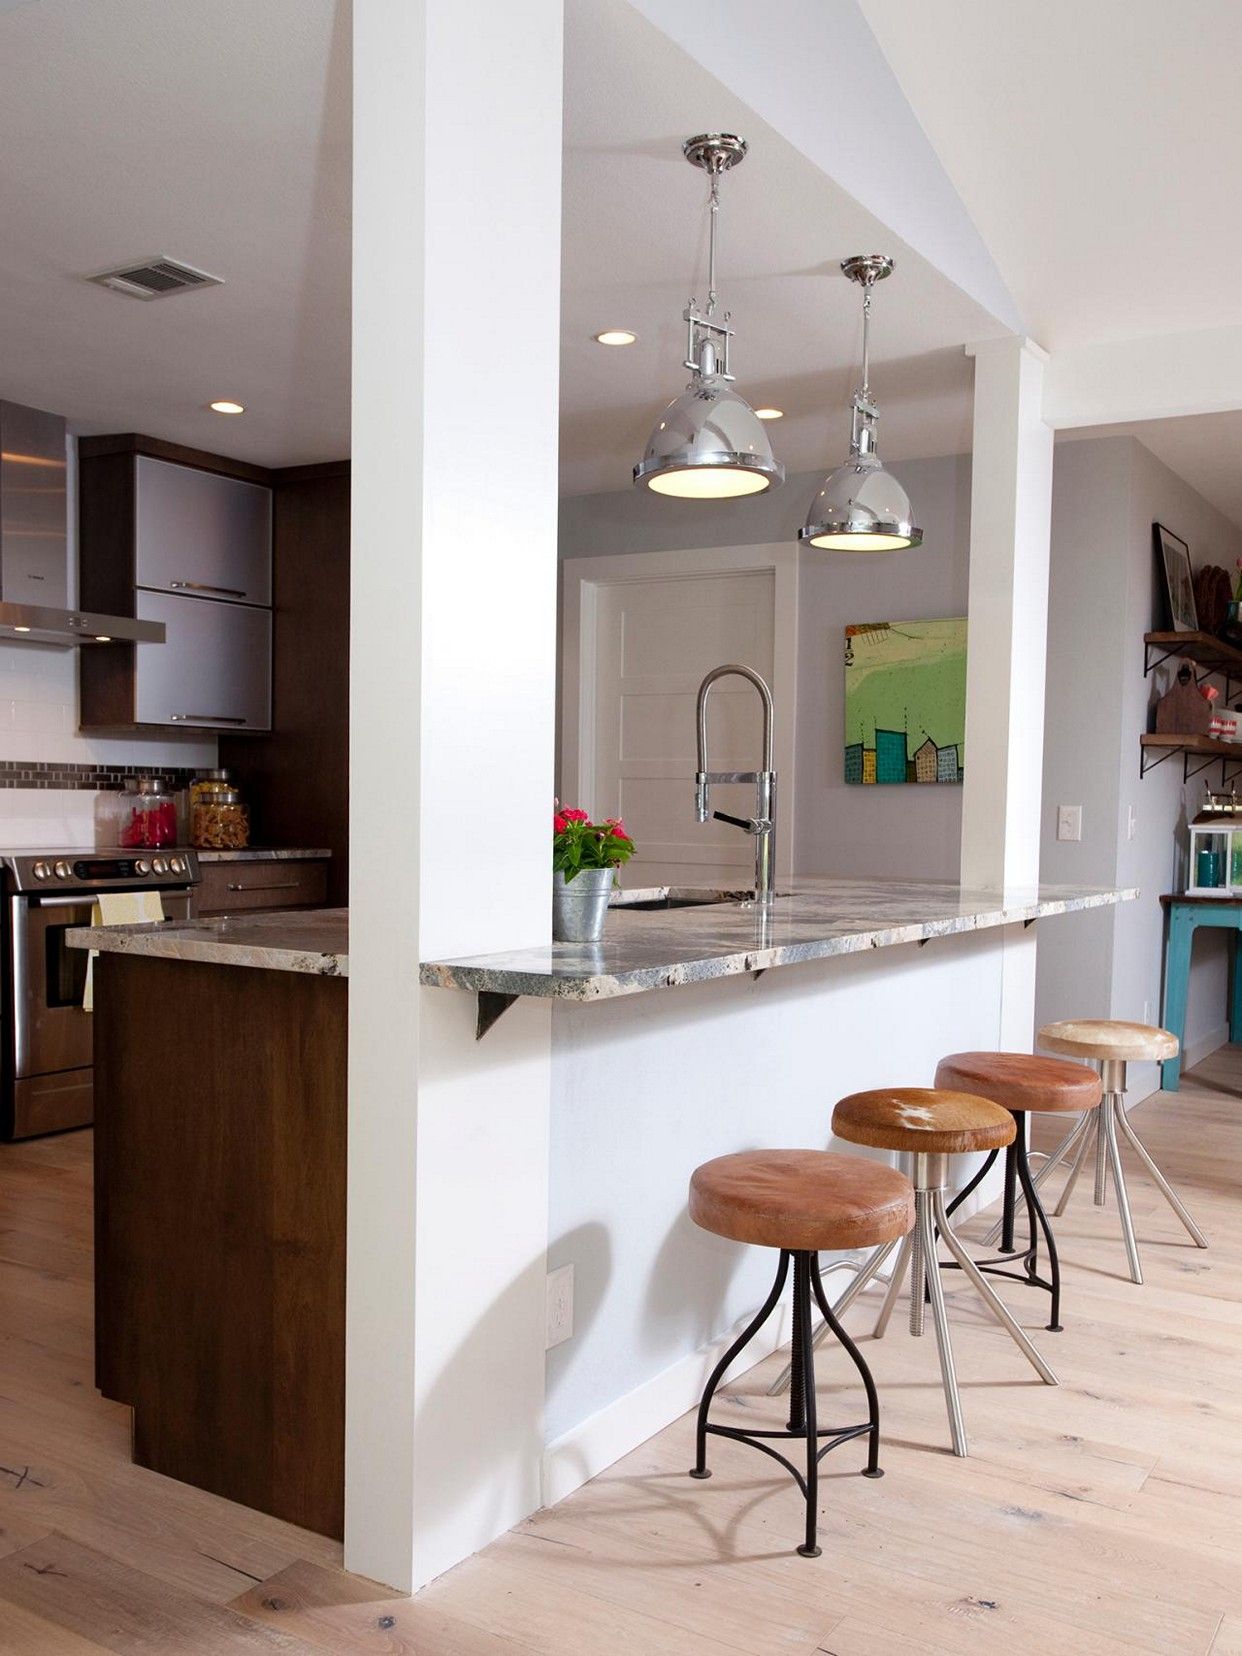 Open Concept Kitchen with Half Wall Ideas | Kitchen bar design ...